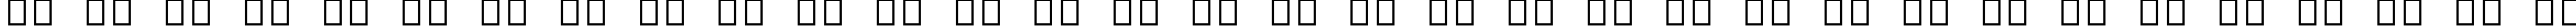 Пример написания русского алфавита шрифтом Arial Alternative Regular